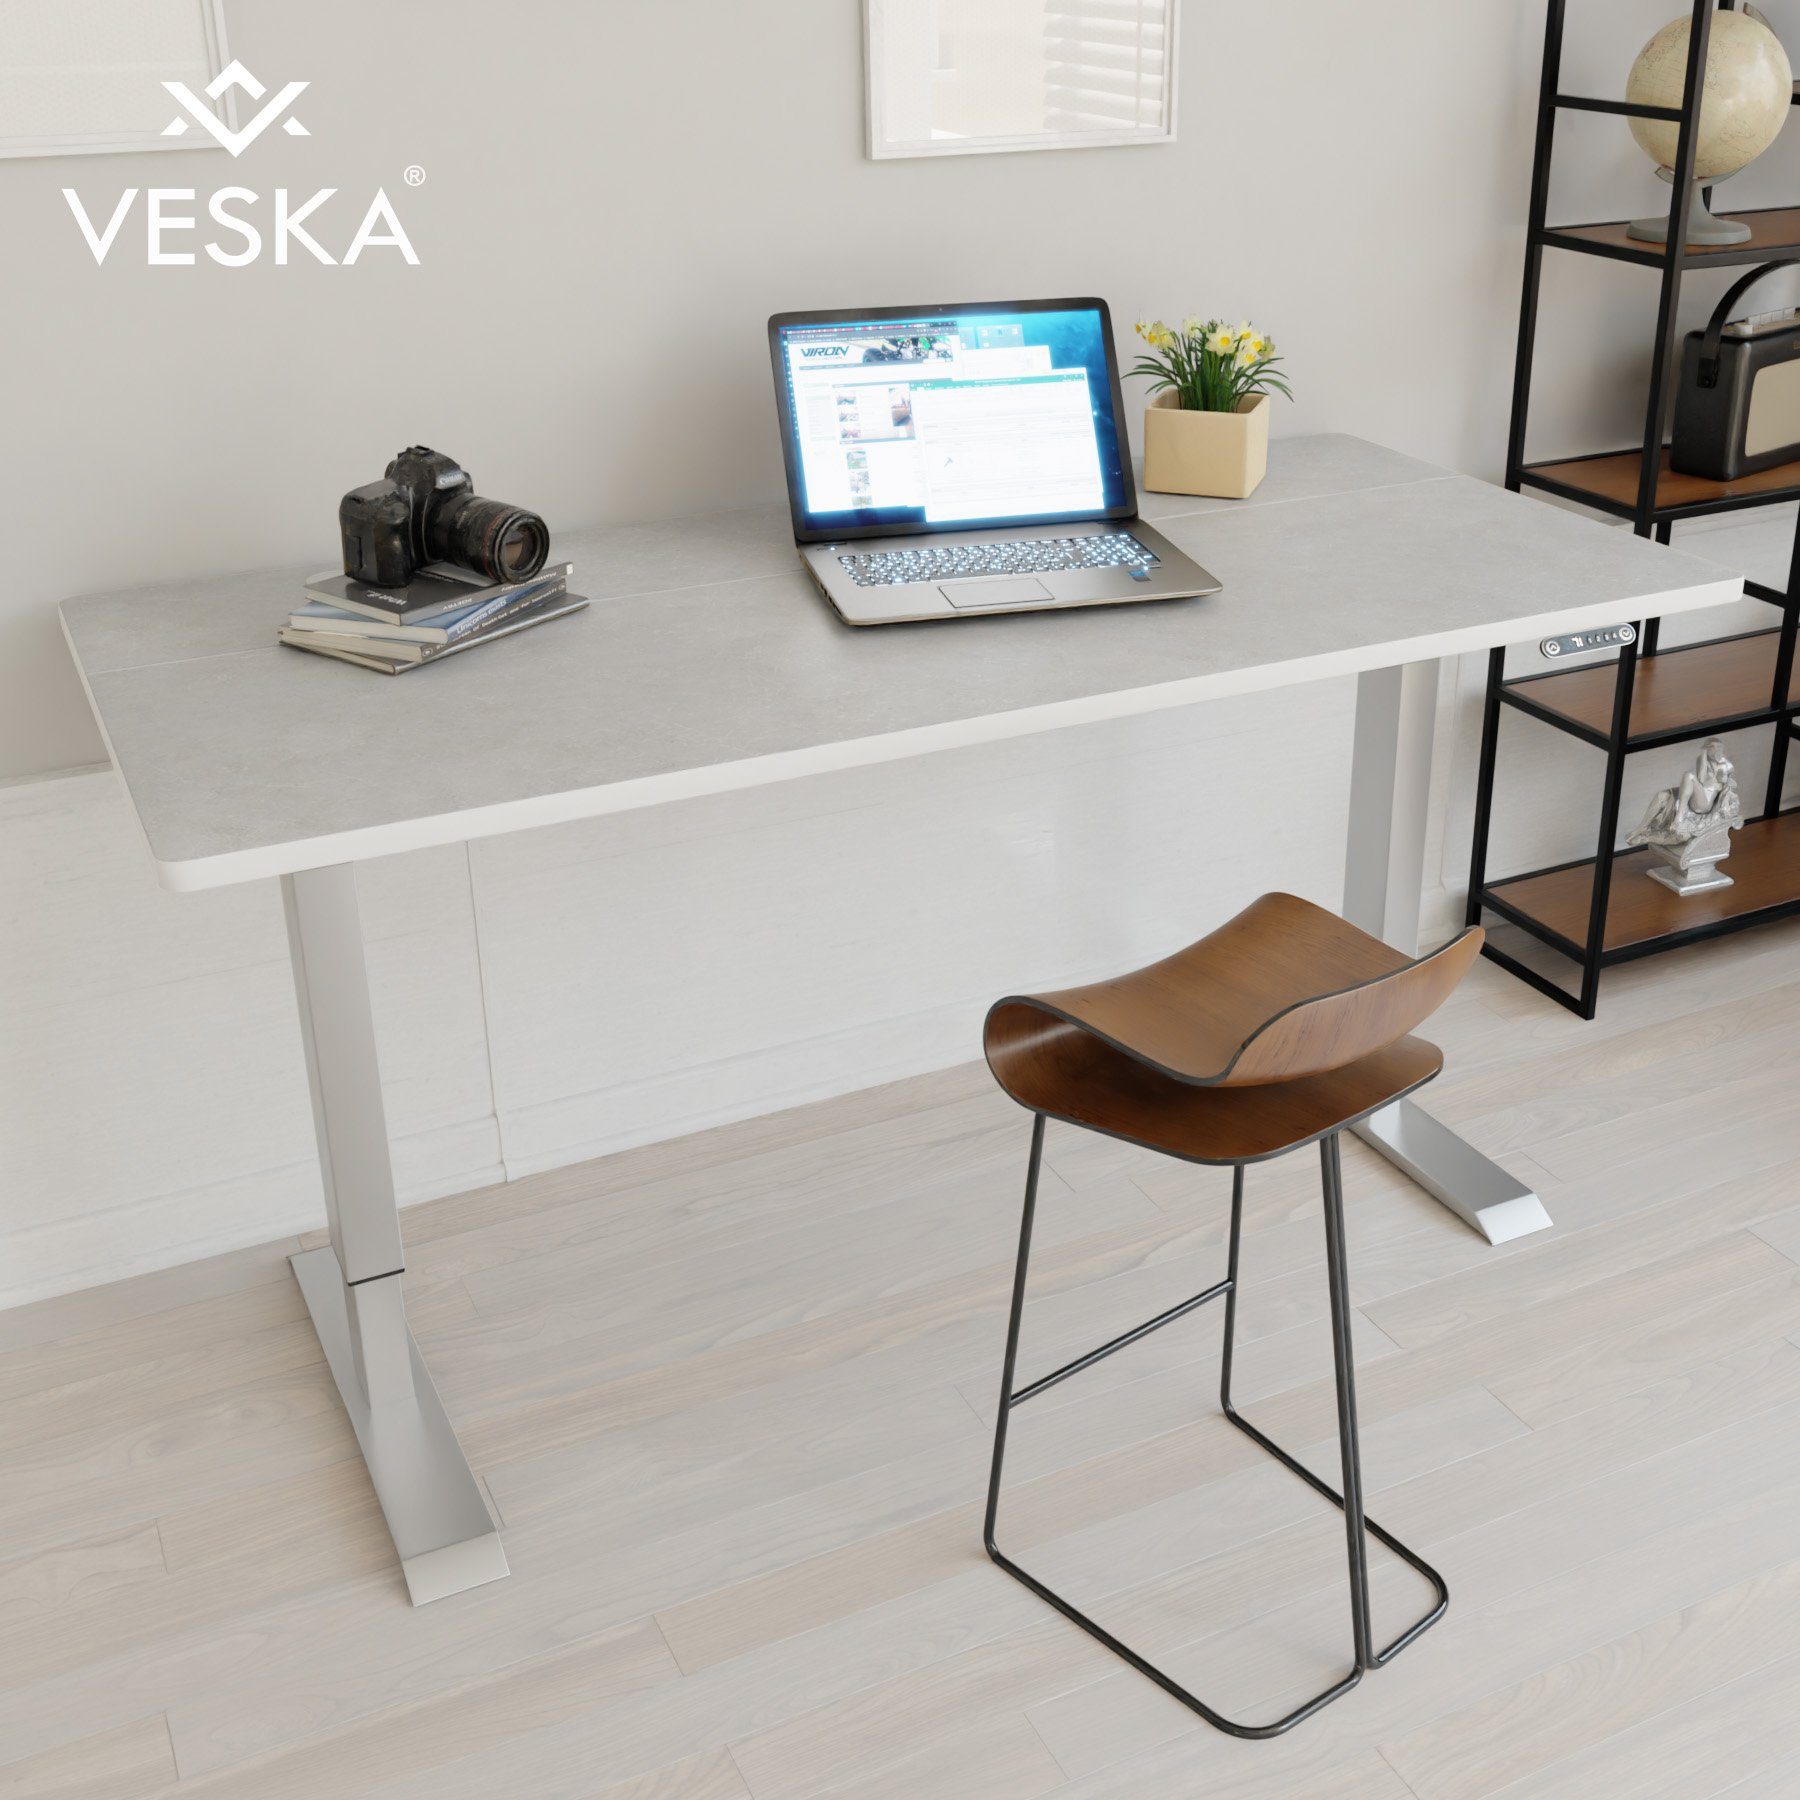 VESKA Schreibtisch Höhenverstellbar 140 x 70 cm - Bürotisch Elektrisch mit Touchscreen - Sitz- & Stehpult Home Office Silber | Stein-Grau